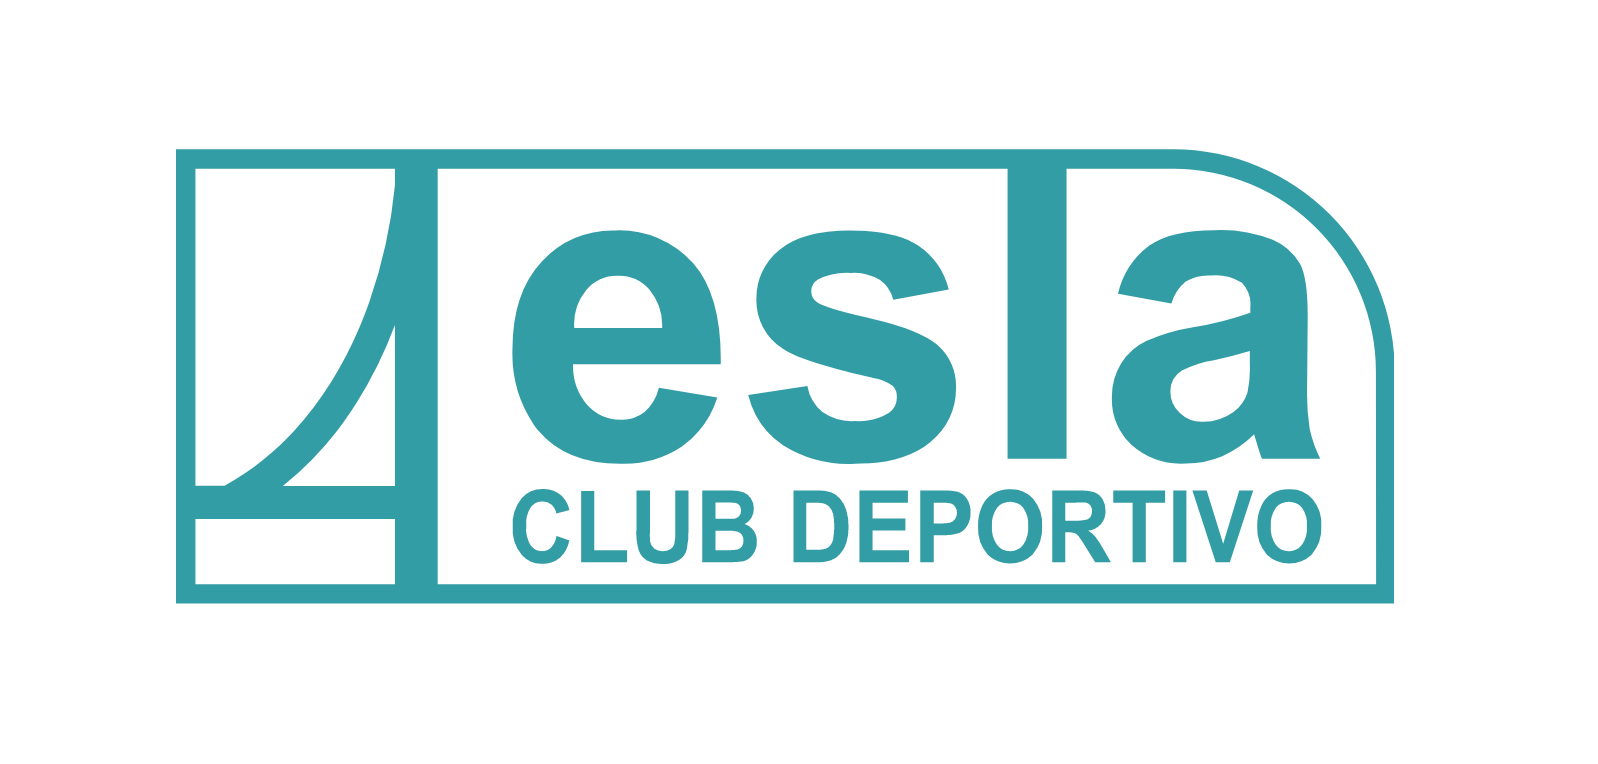 Club Deportivo Esla | Deporte | Piscina | Embarcadero | Pádel